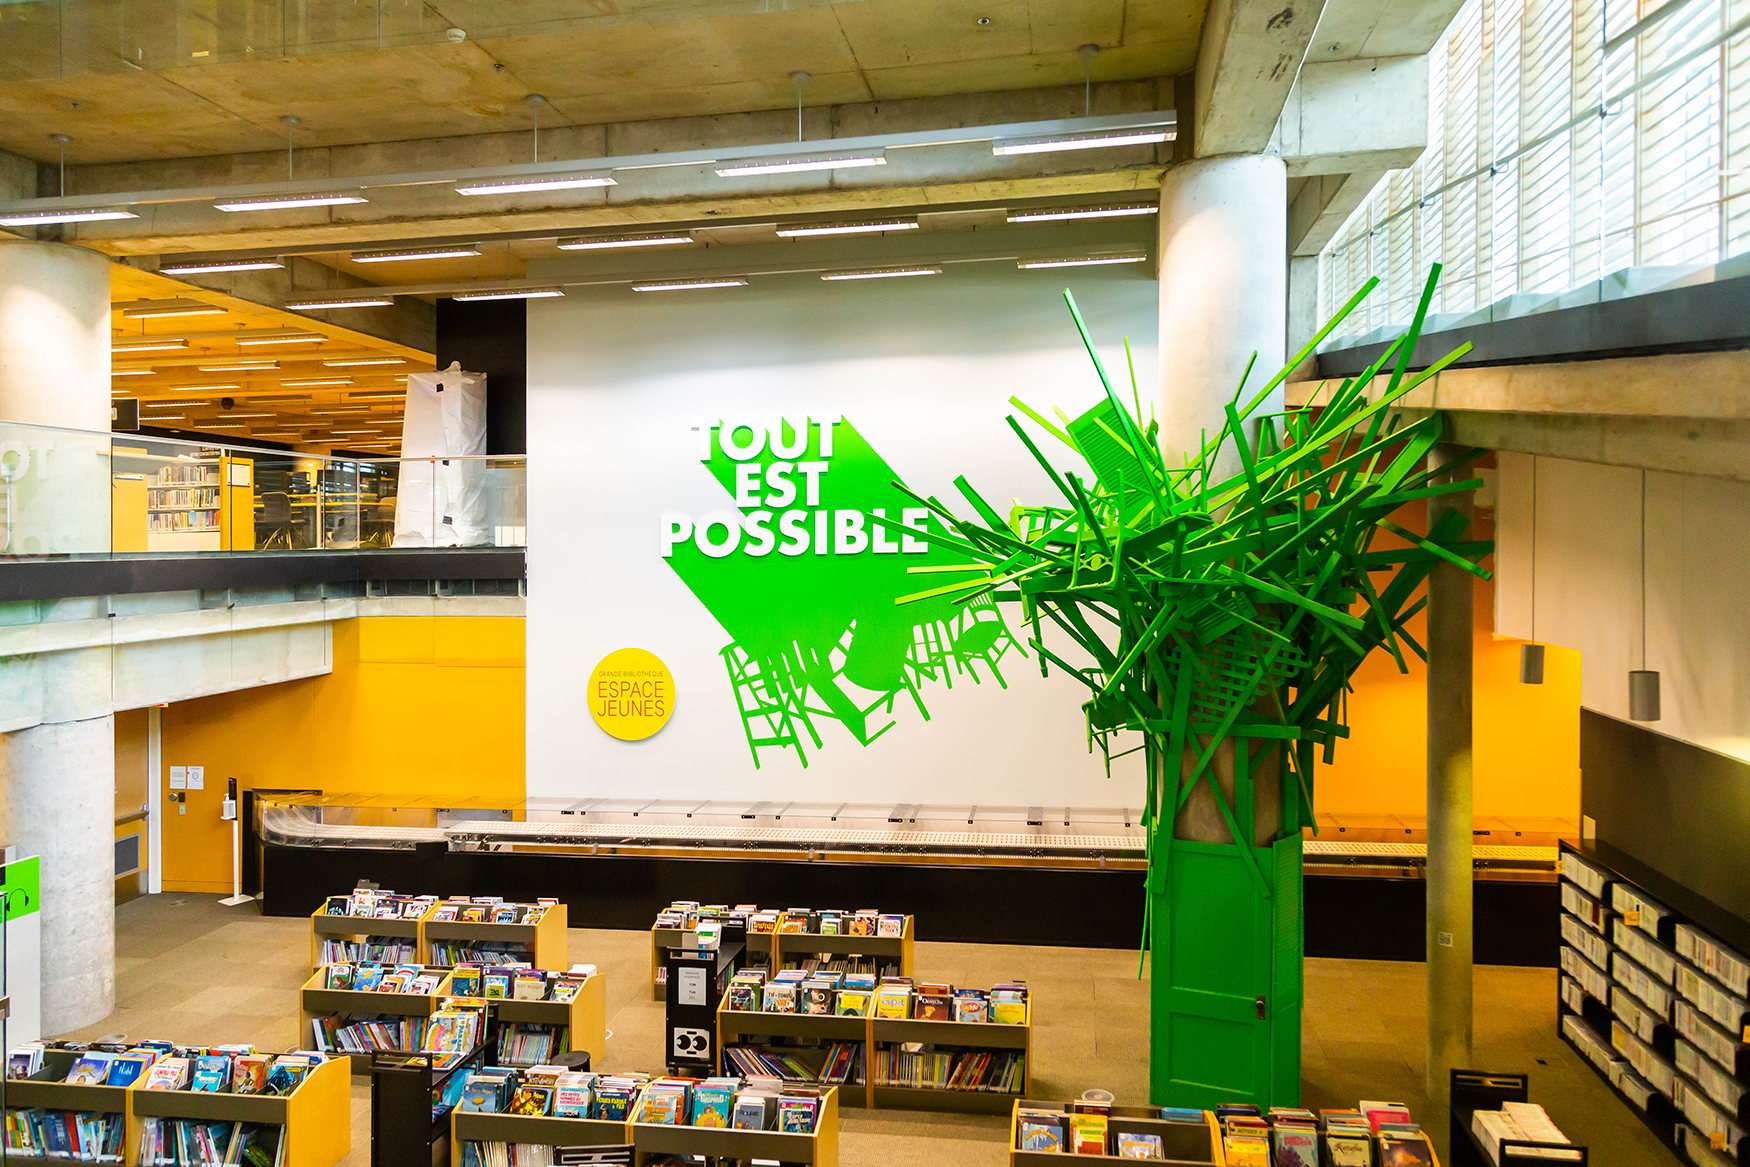 Rayons de livres jouxtant une installation d'art faite de matériaux recyclés, intitulée « Tout est possible ».